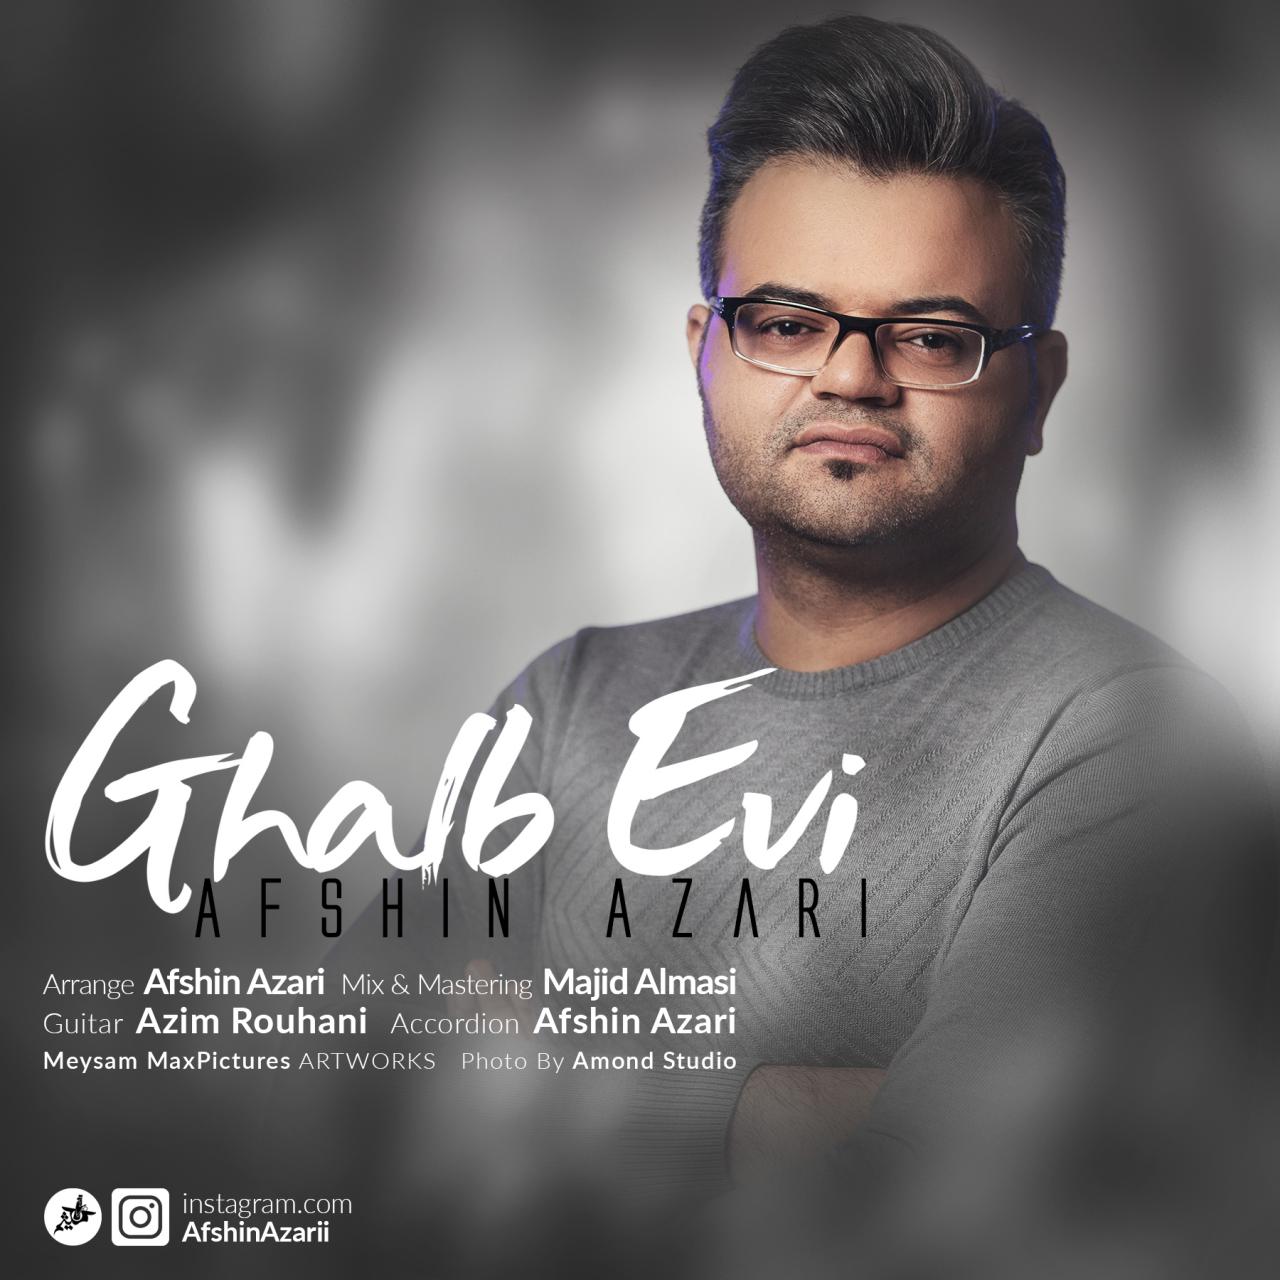  دانلود آهنگ جدید افشین آذری - قلب اوی | Download New Music By Afshin Azari - Ghalb Evi